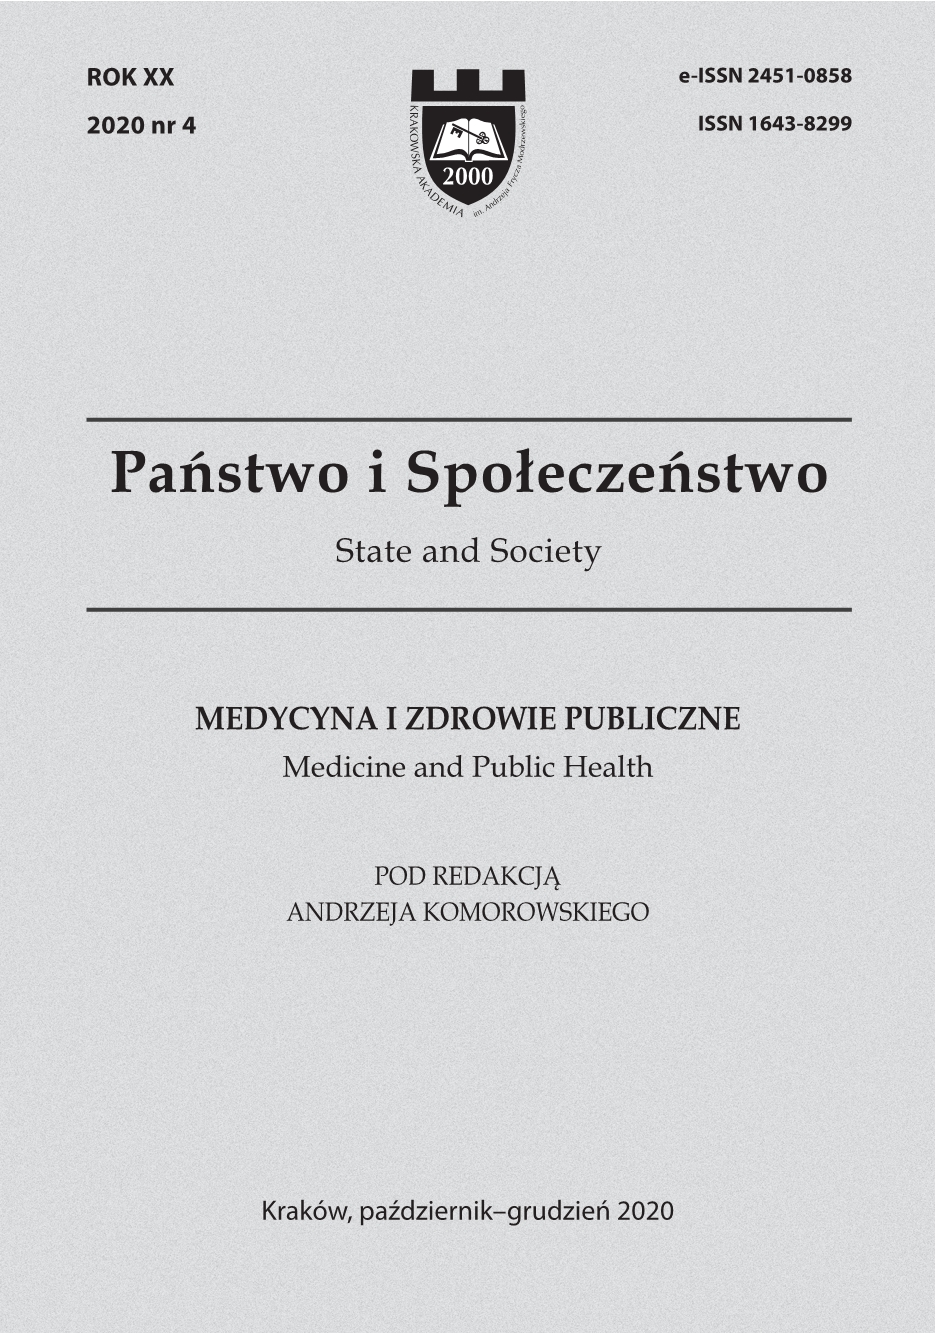 Family – Health – Disease, eds. Filip Gołkowski, Małgorzata Kalemba-Drożdż Cover Image